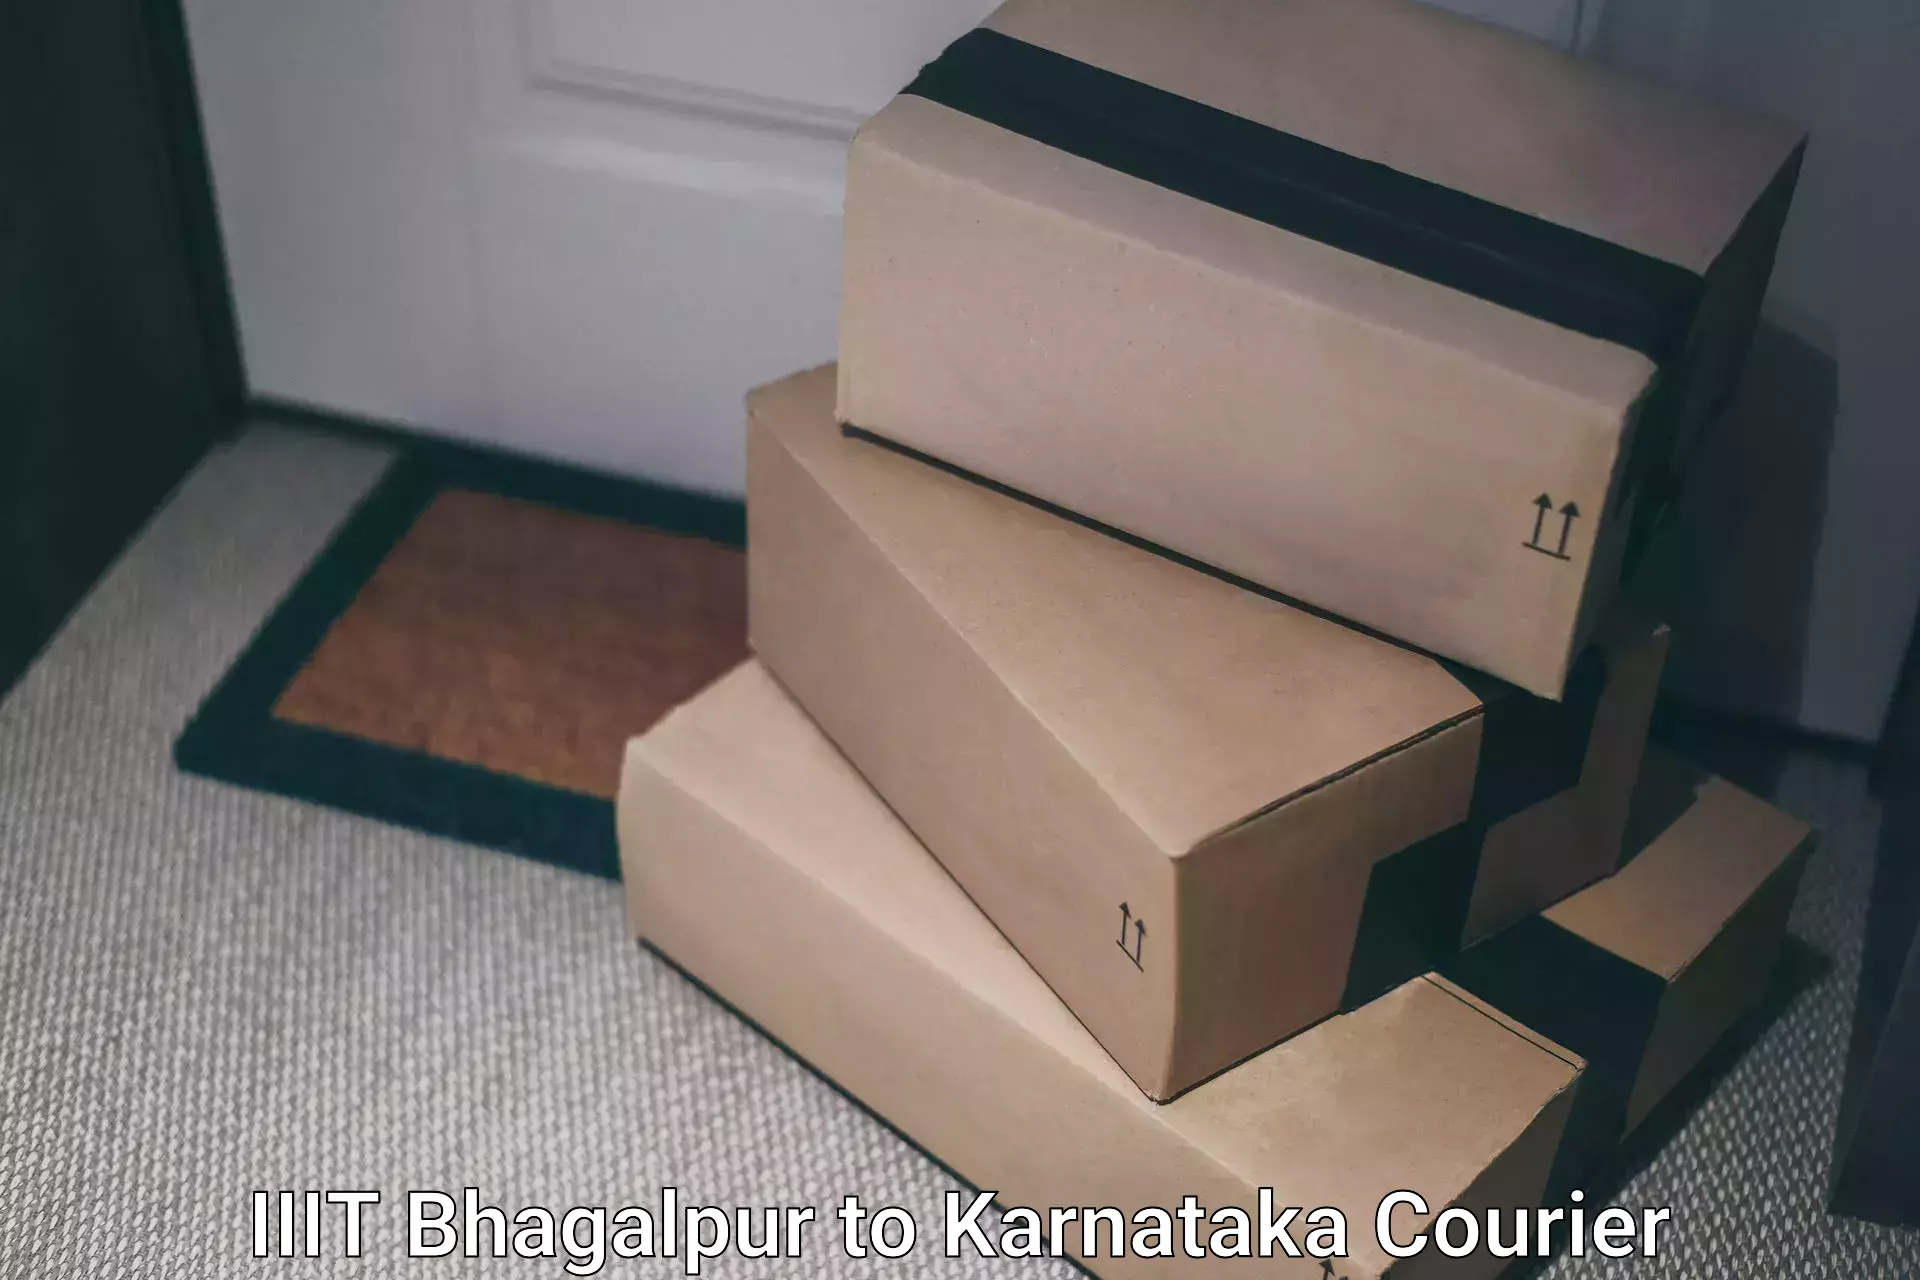 Courier service booking IIIT Bhagalpur to Alnavar